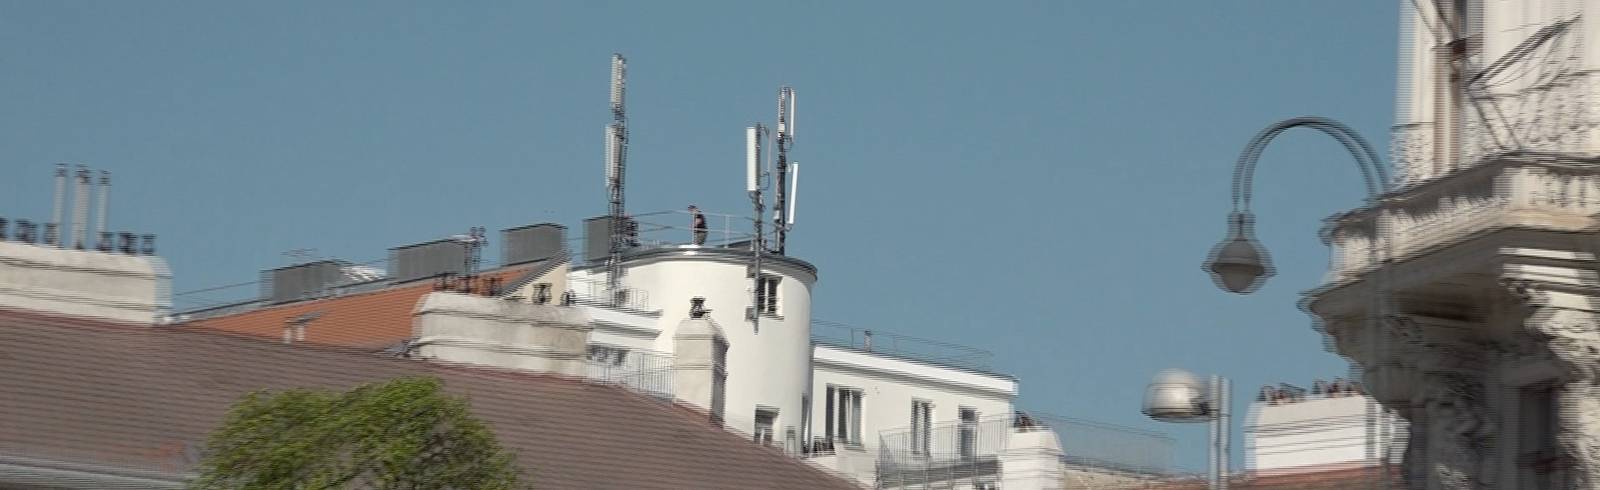 Mobiles Internet in Wien wird schneller